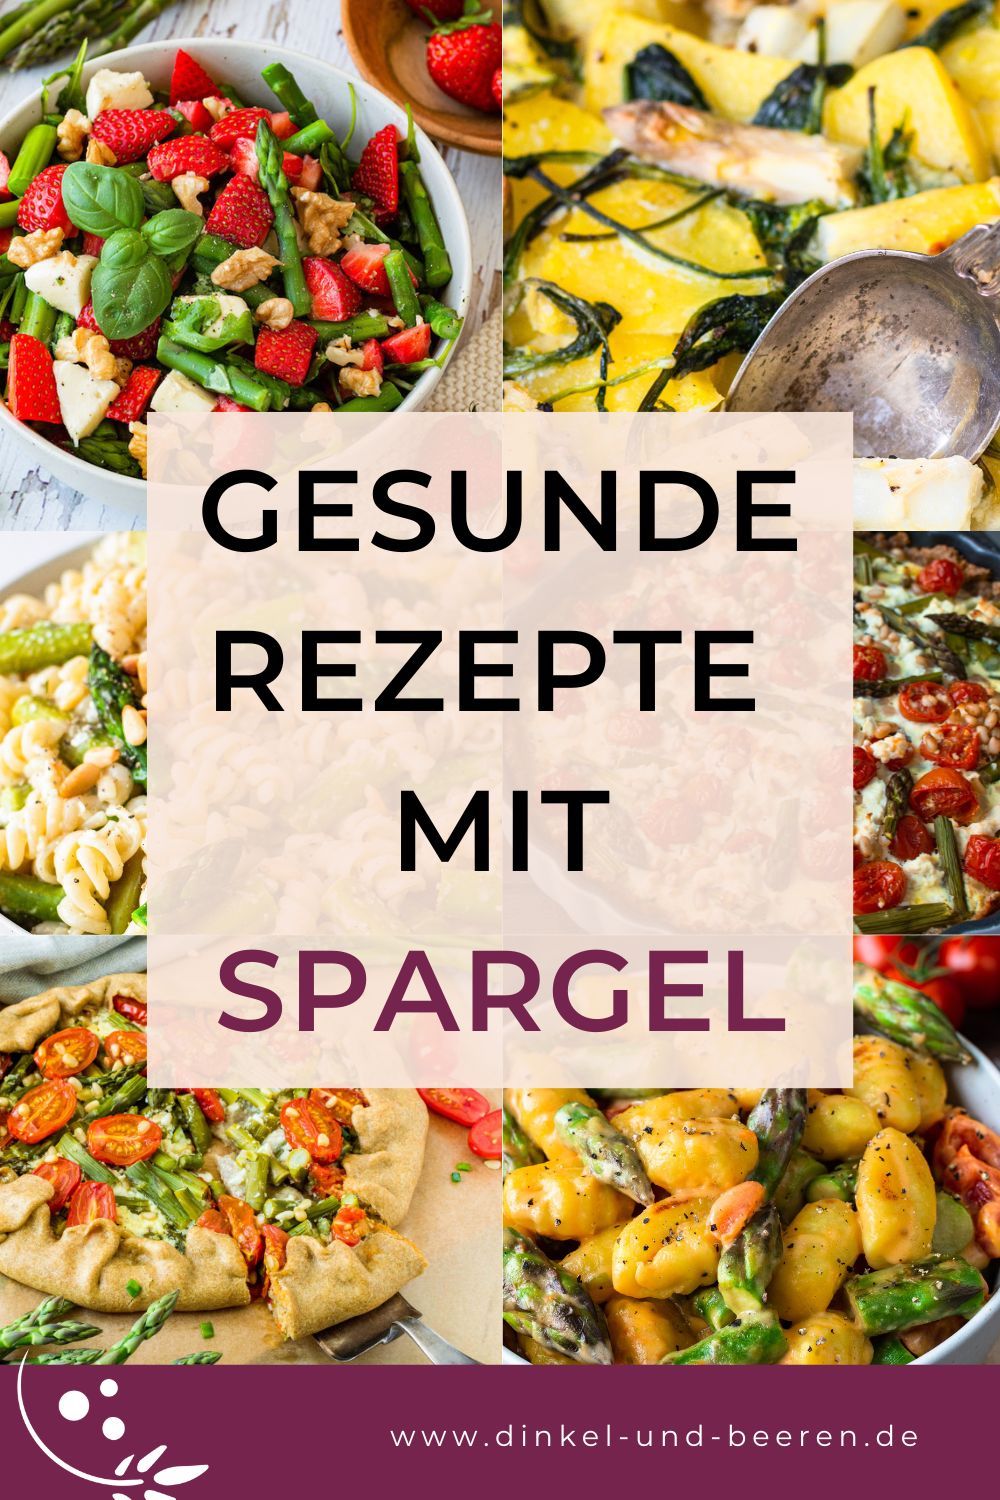 Pinterest-Grafik mit 6 Fotos mit Spargel-Gerichten im Hintergrund. In der Mitte ein rosa Kasten mit dem Schriftzug "Gesunde Rezepte mit Spargel".